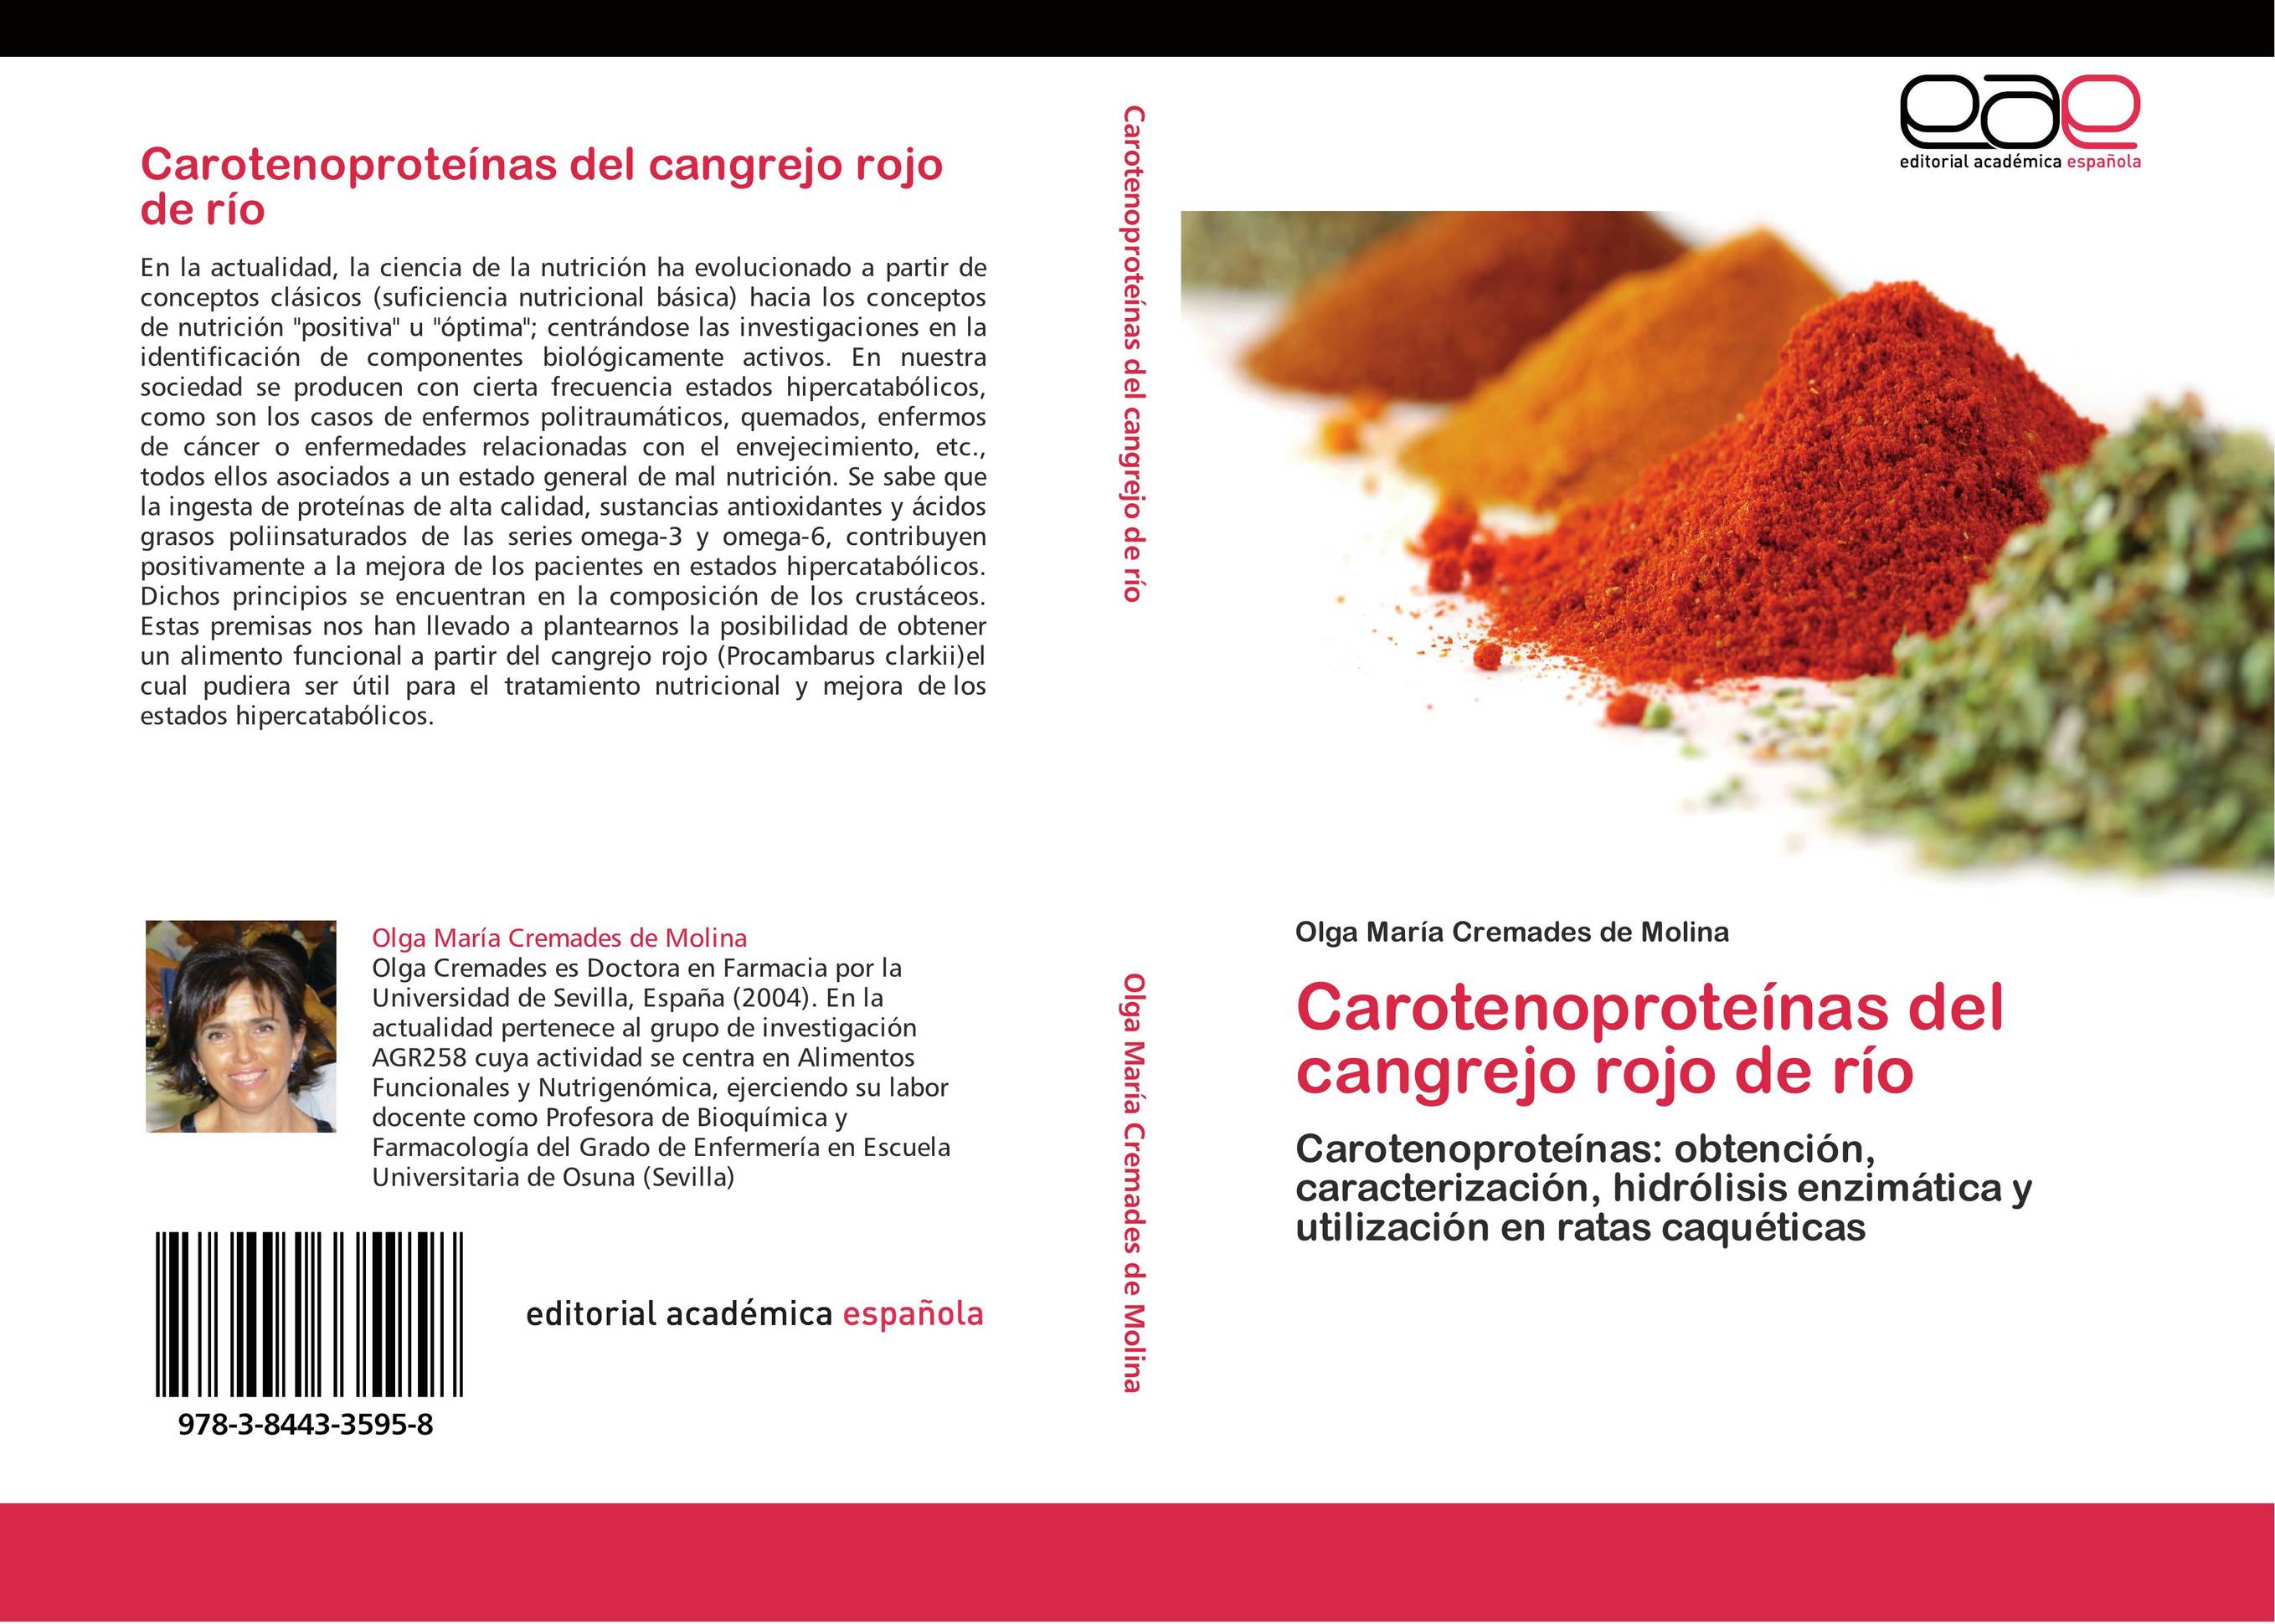 Carotenoproteínas del cangrejo rojo de río